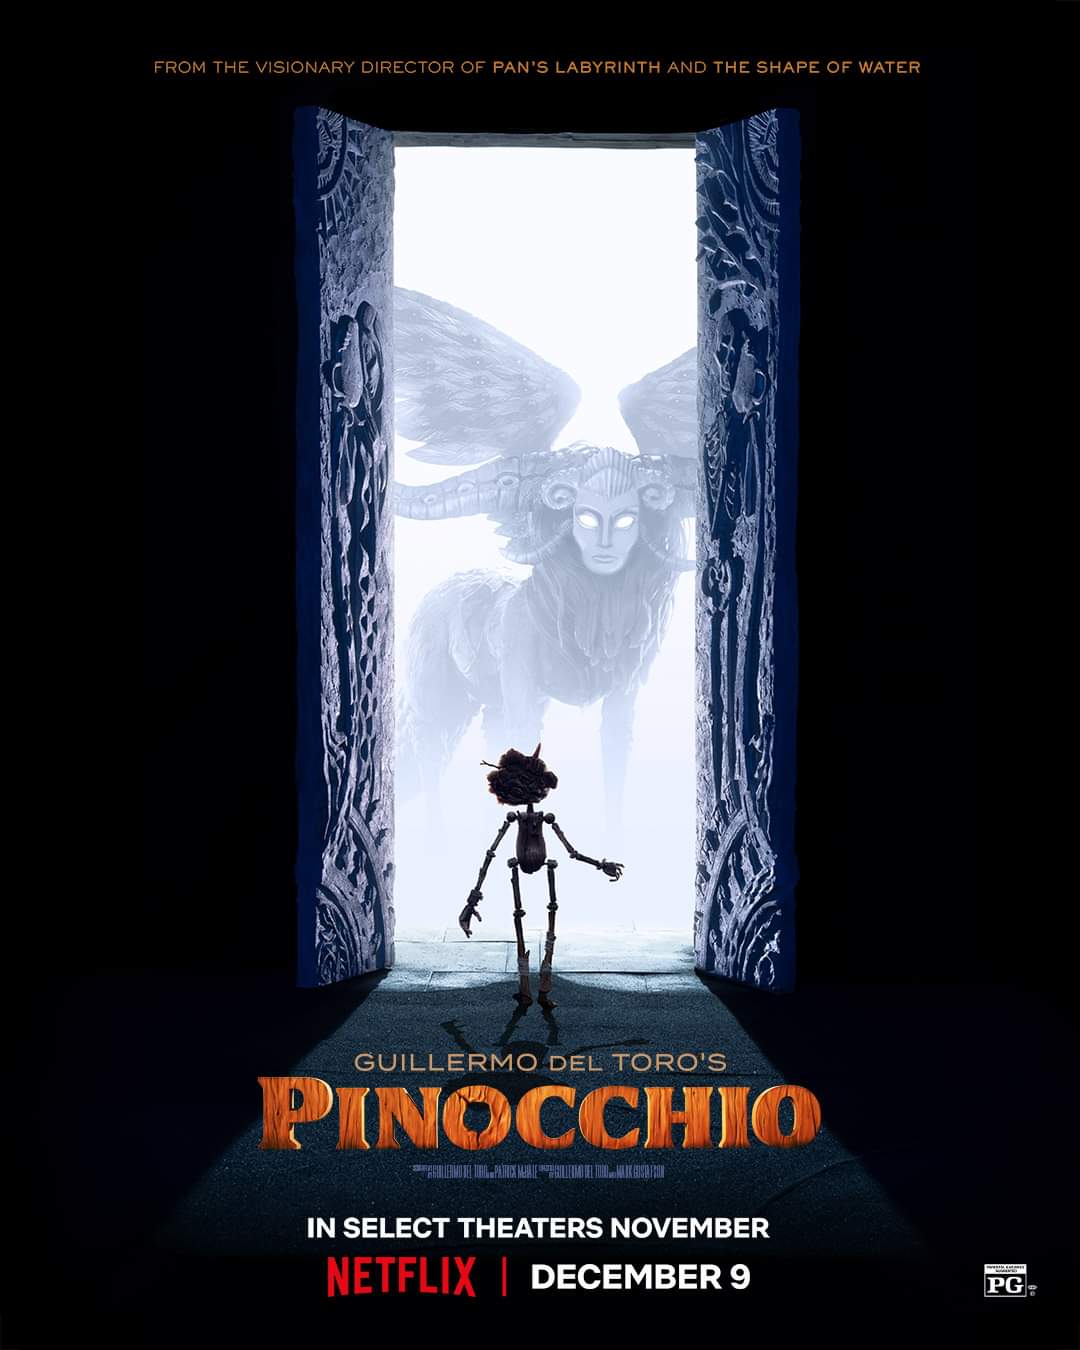 Pinocchio Guillermo del Toro